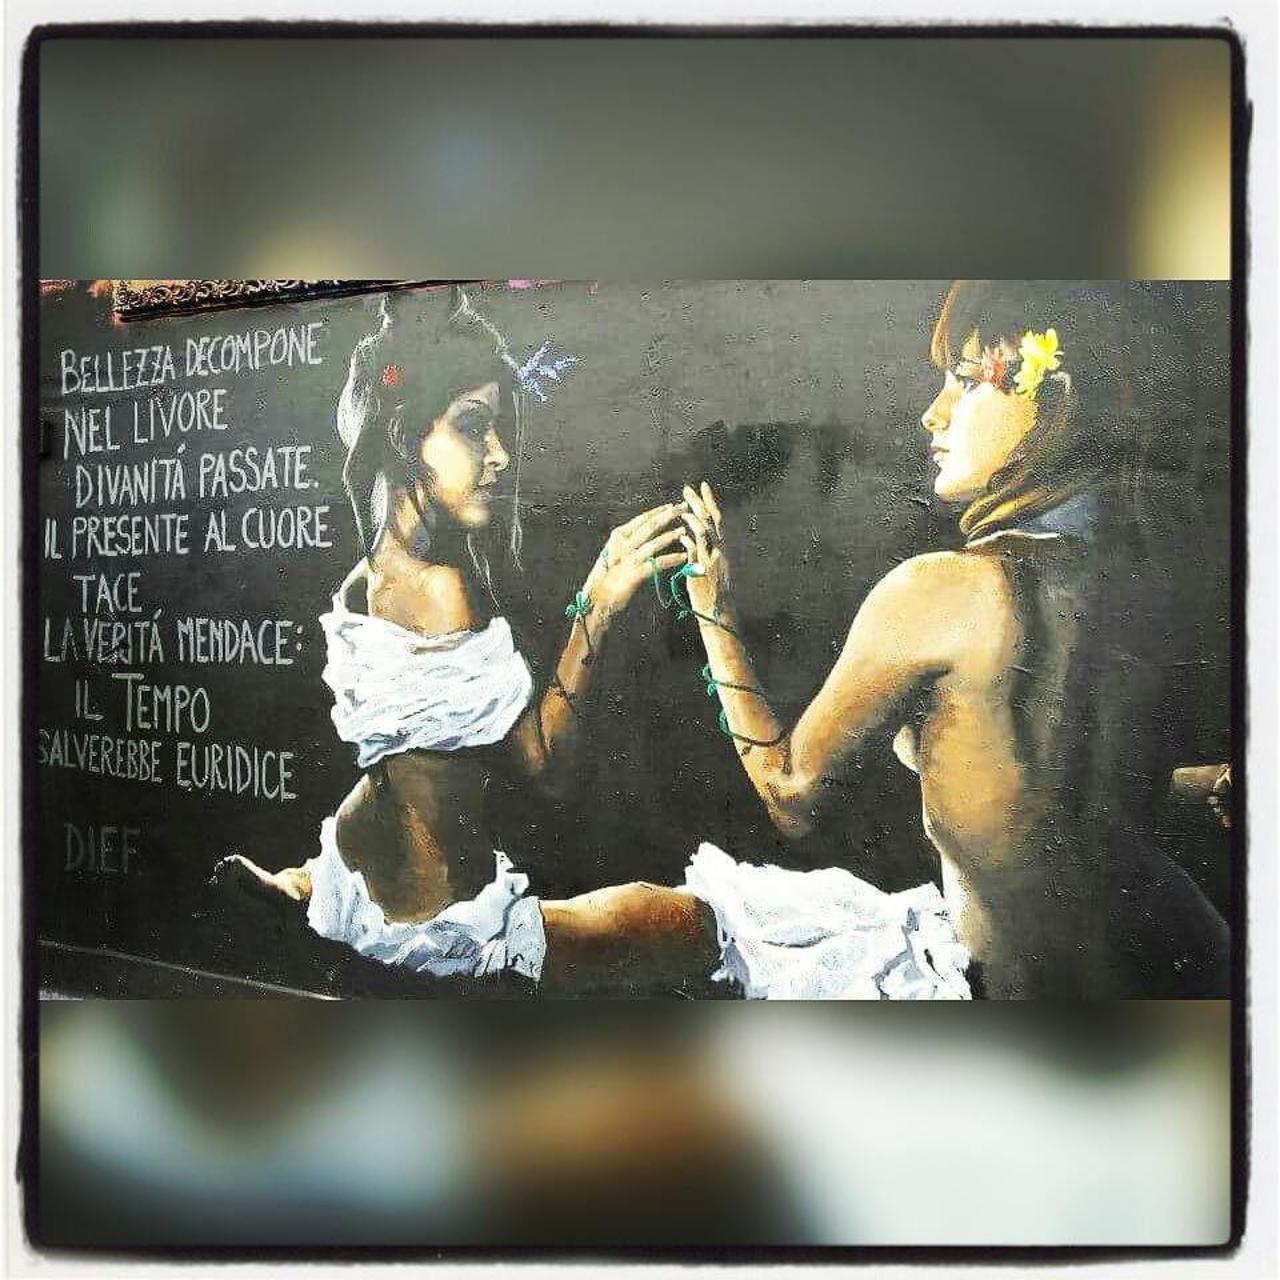 #streetart #london #dief #girls #hand #skirt #england #londonstreetart #street #art #streetartlondon #graffiti #ste… http://t.co/91d6oV9z76